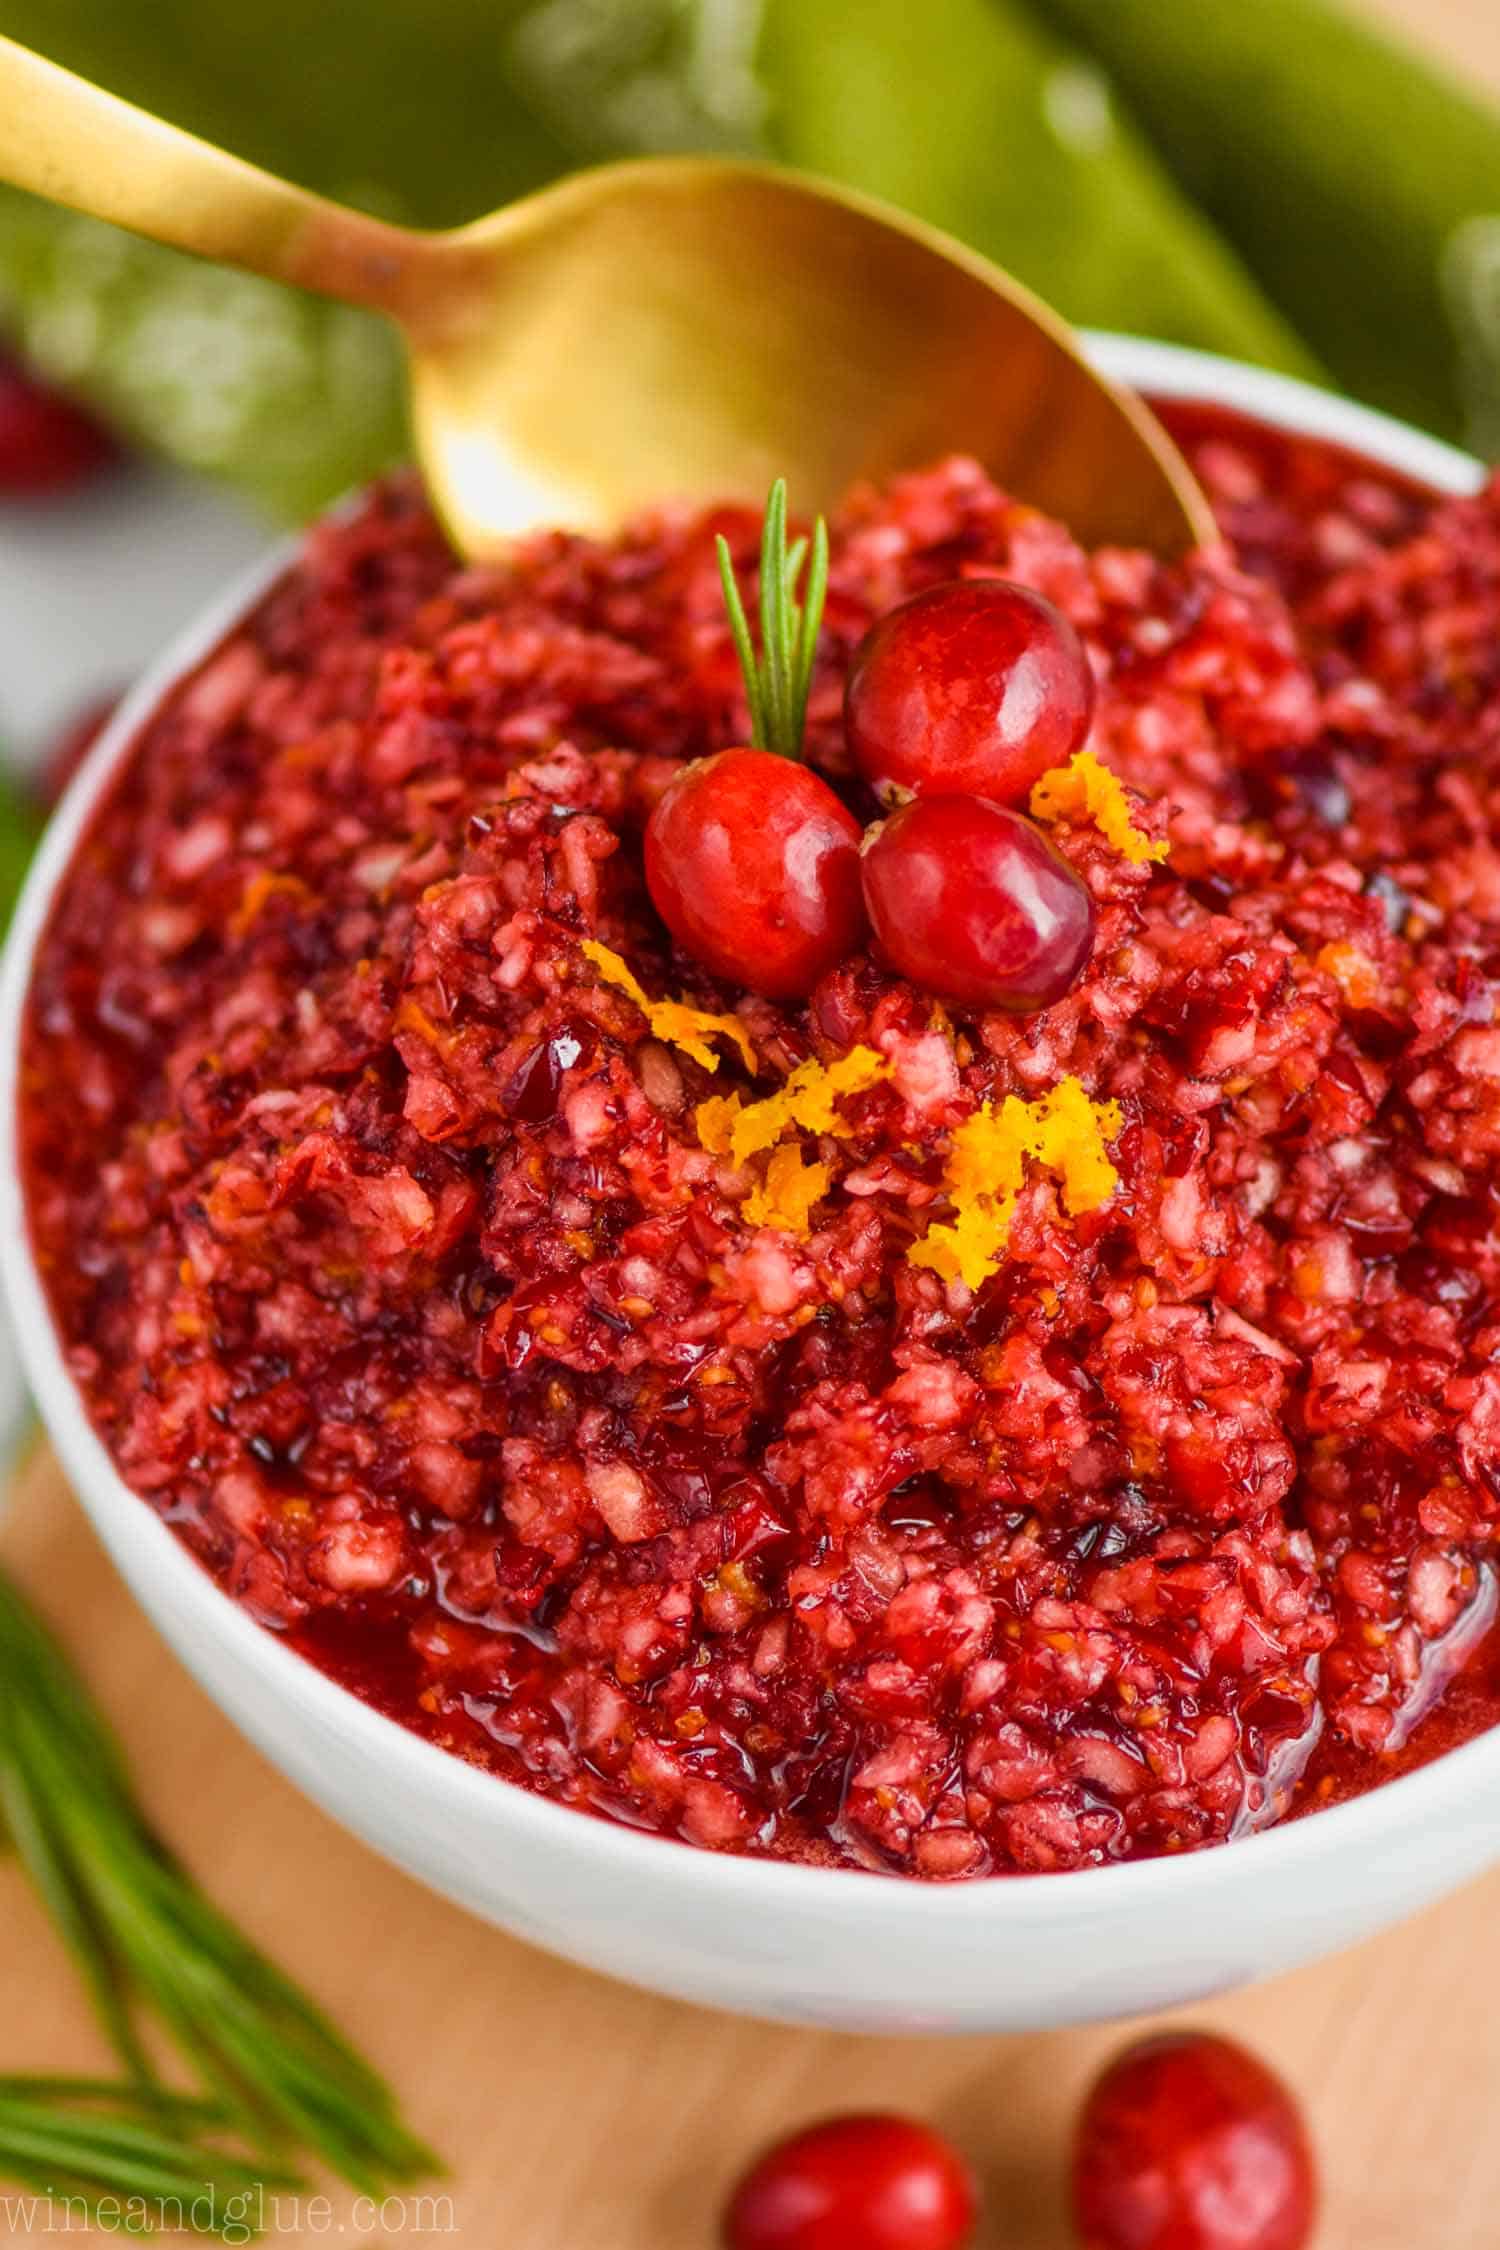 Cranberry relish recipes